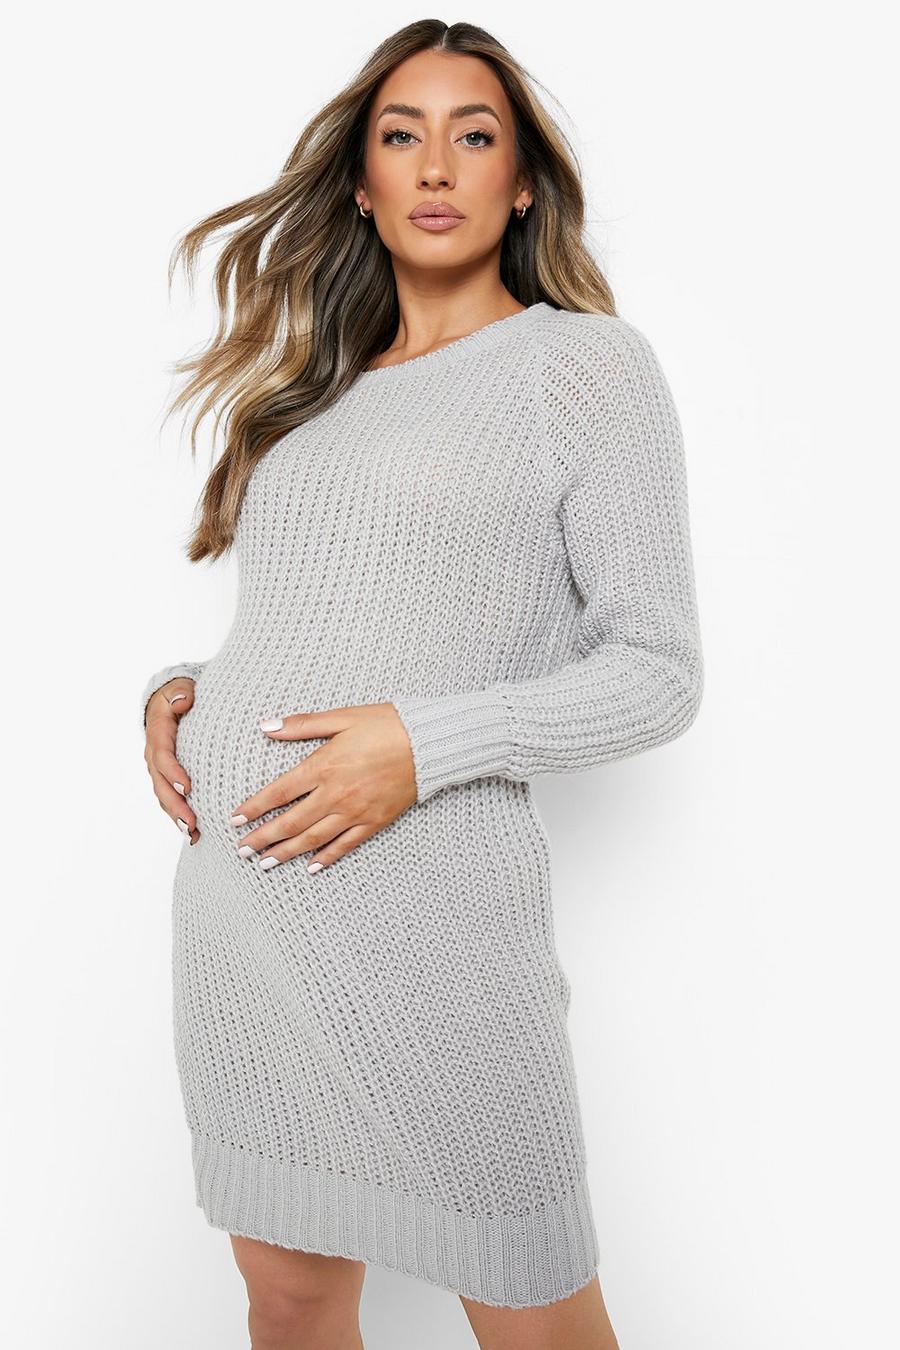 Grey marl Maternity Soft Knit Jumper Dress